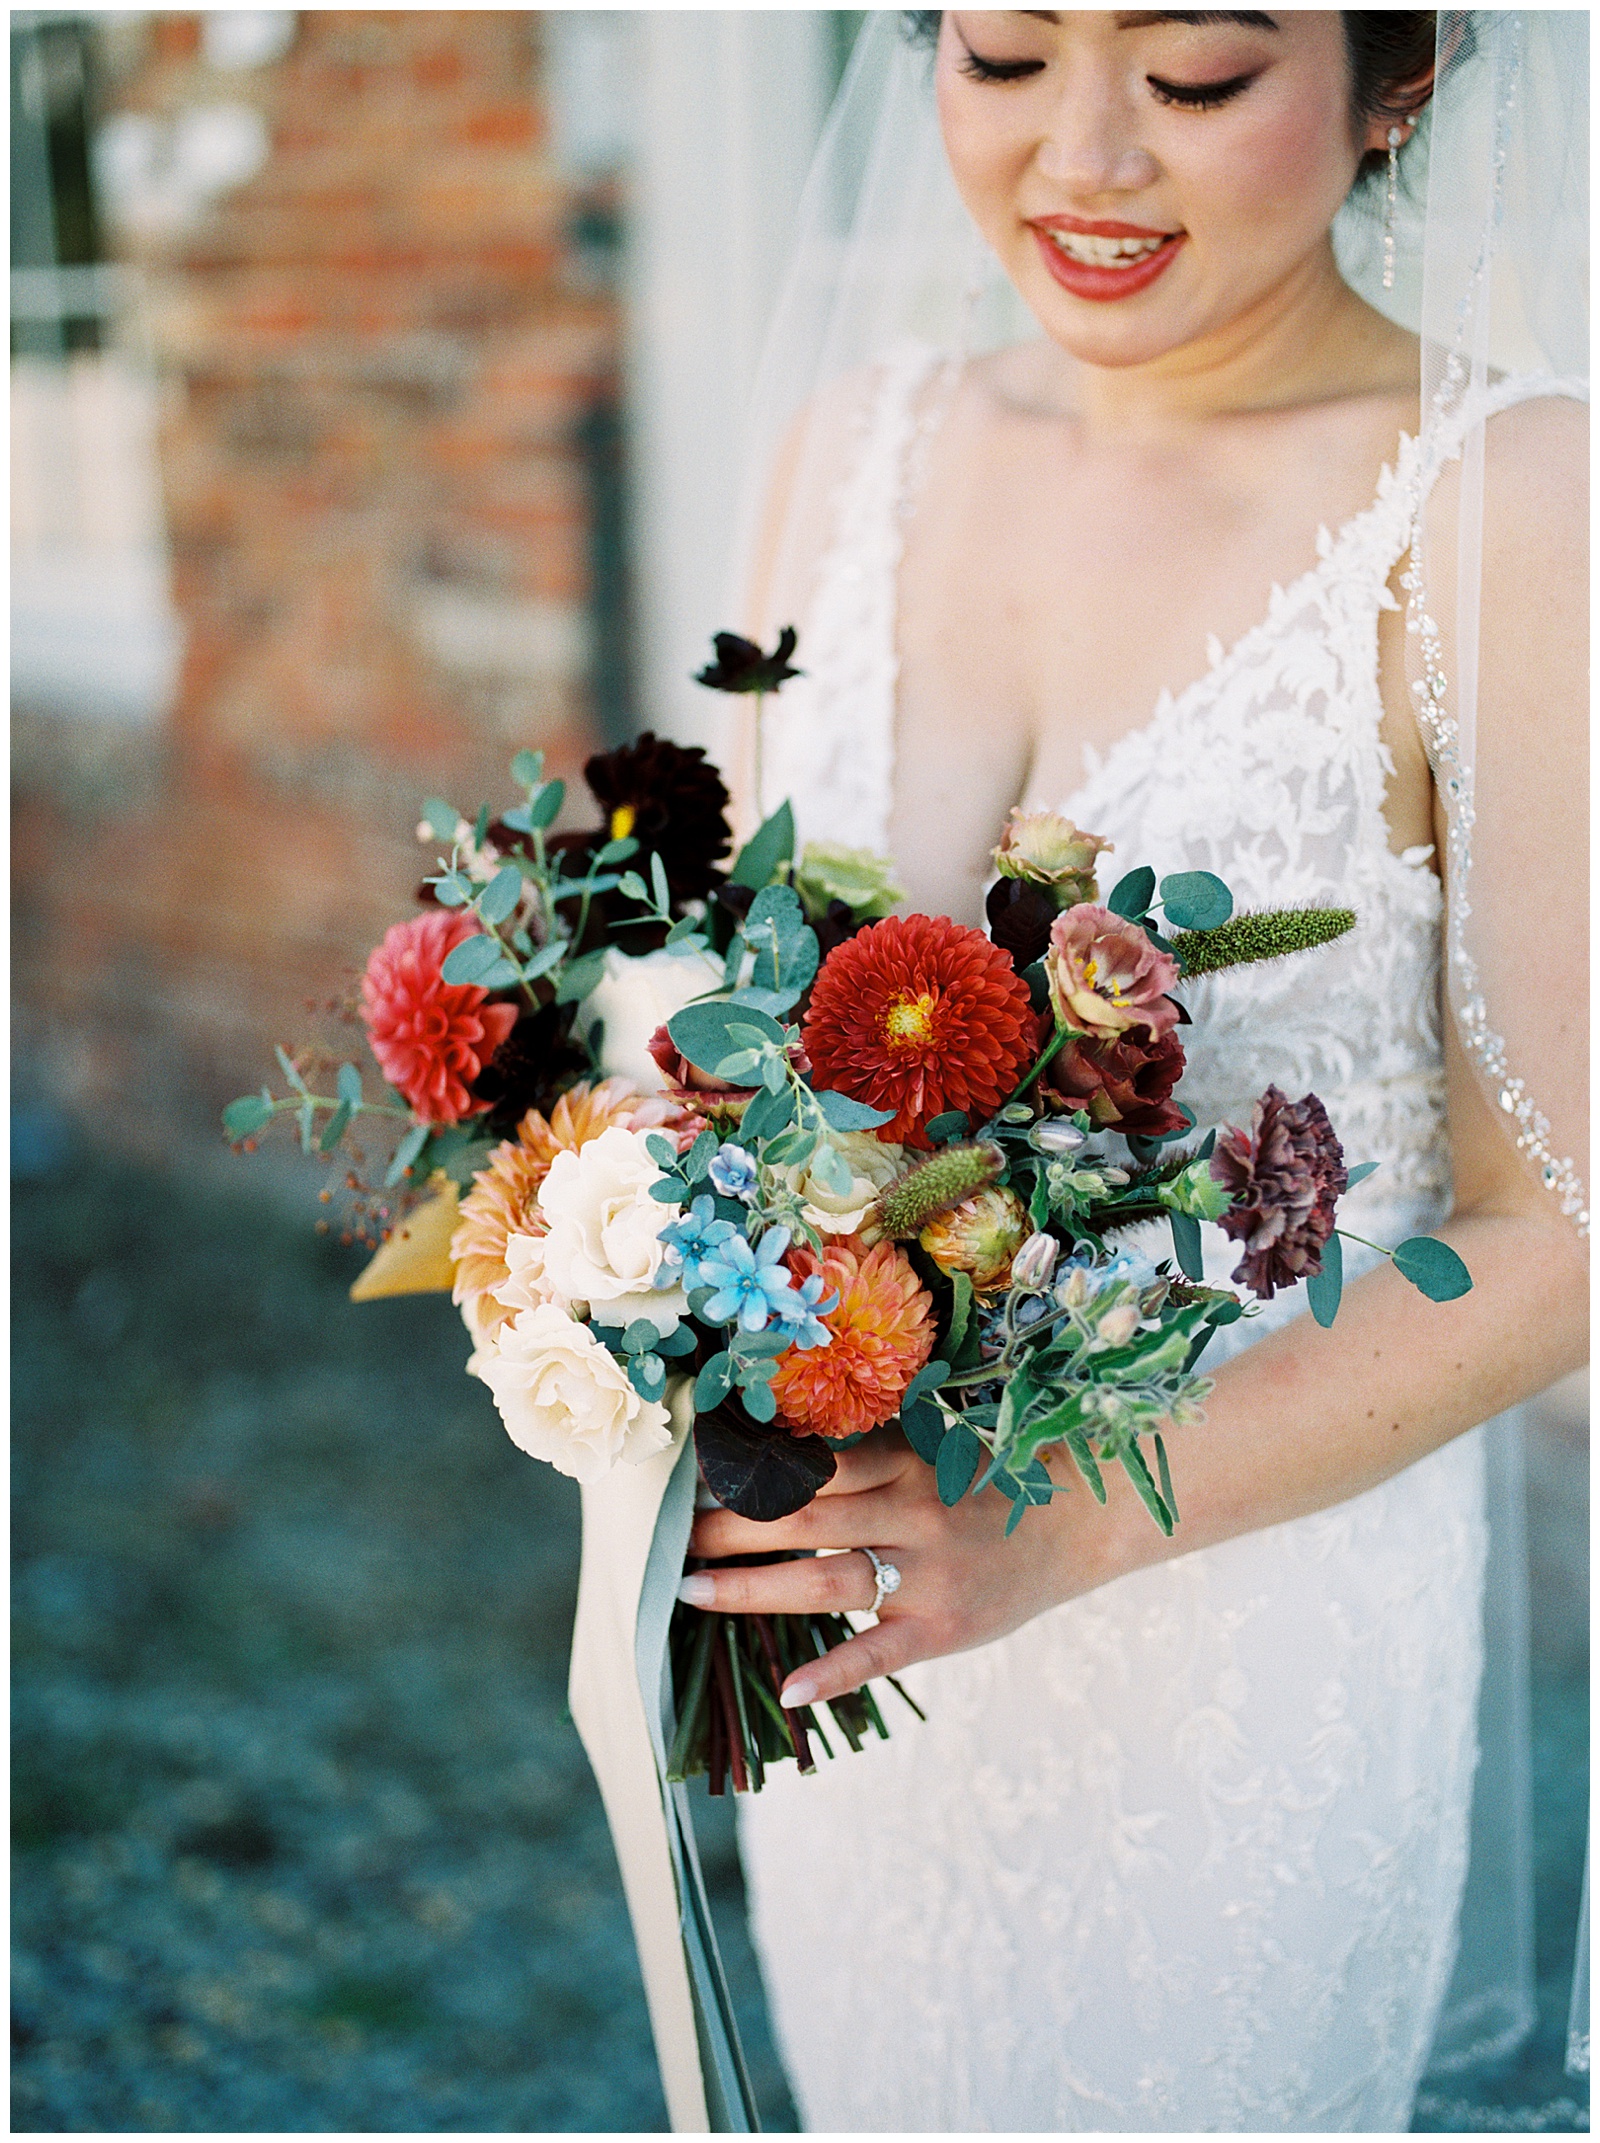 Danielle-Defayette-Photography-Unique-Wedding-Bouquet-Ideas_0002.jpg